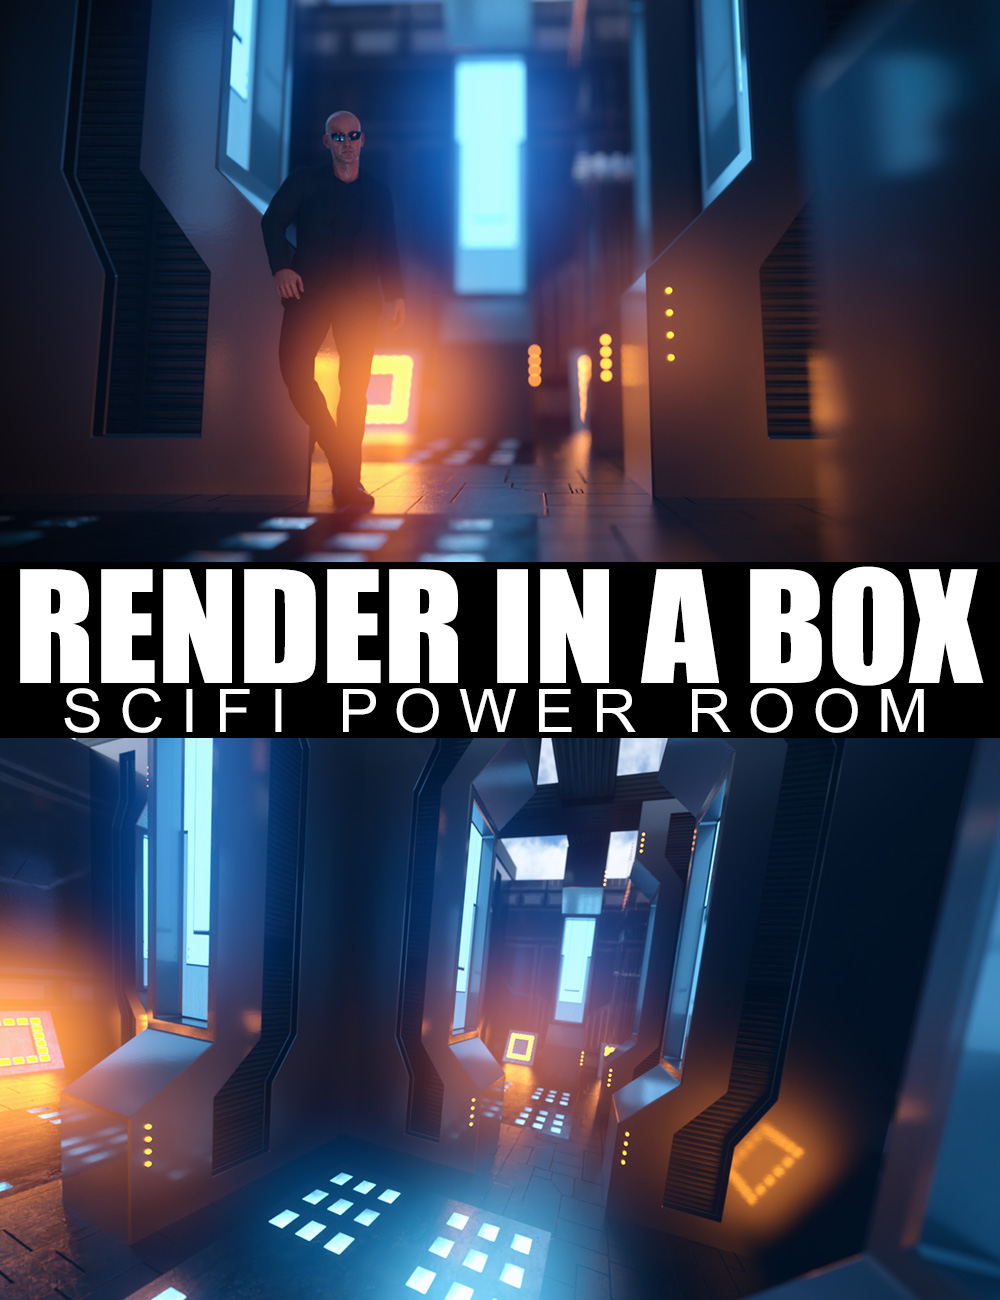 Render In A Box - Scifi Power Room by: Dreamlight, 3D Models by Daz 3D